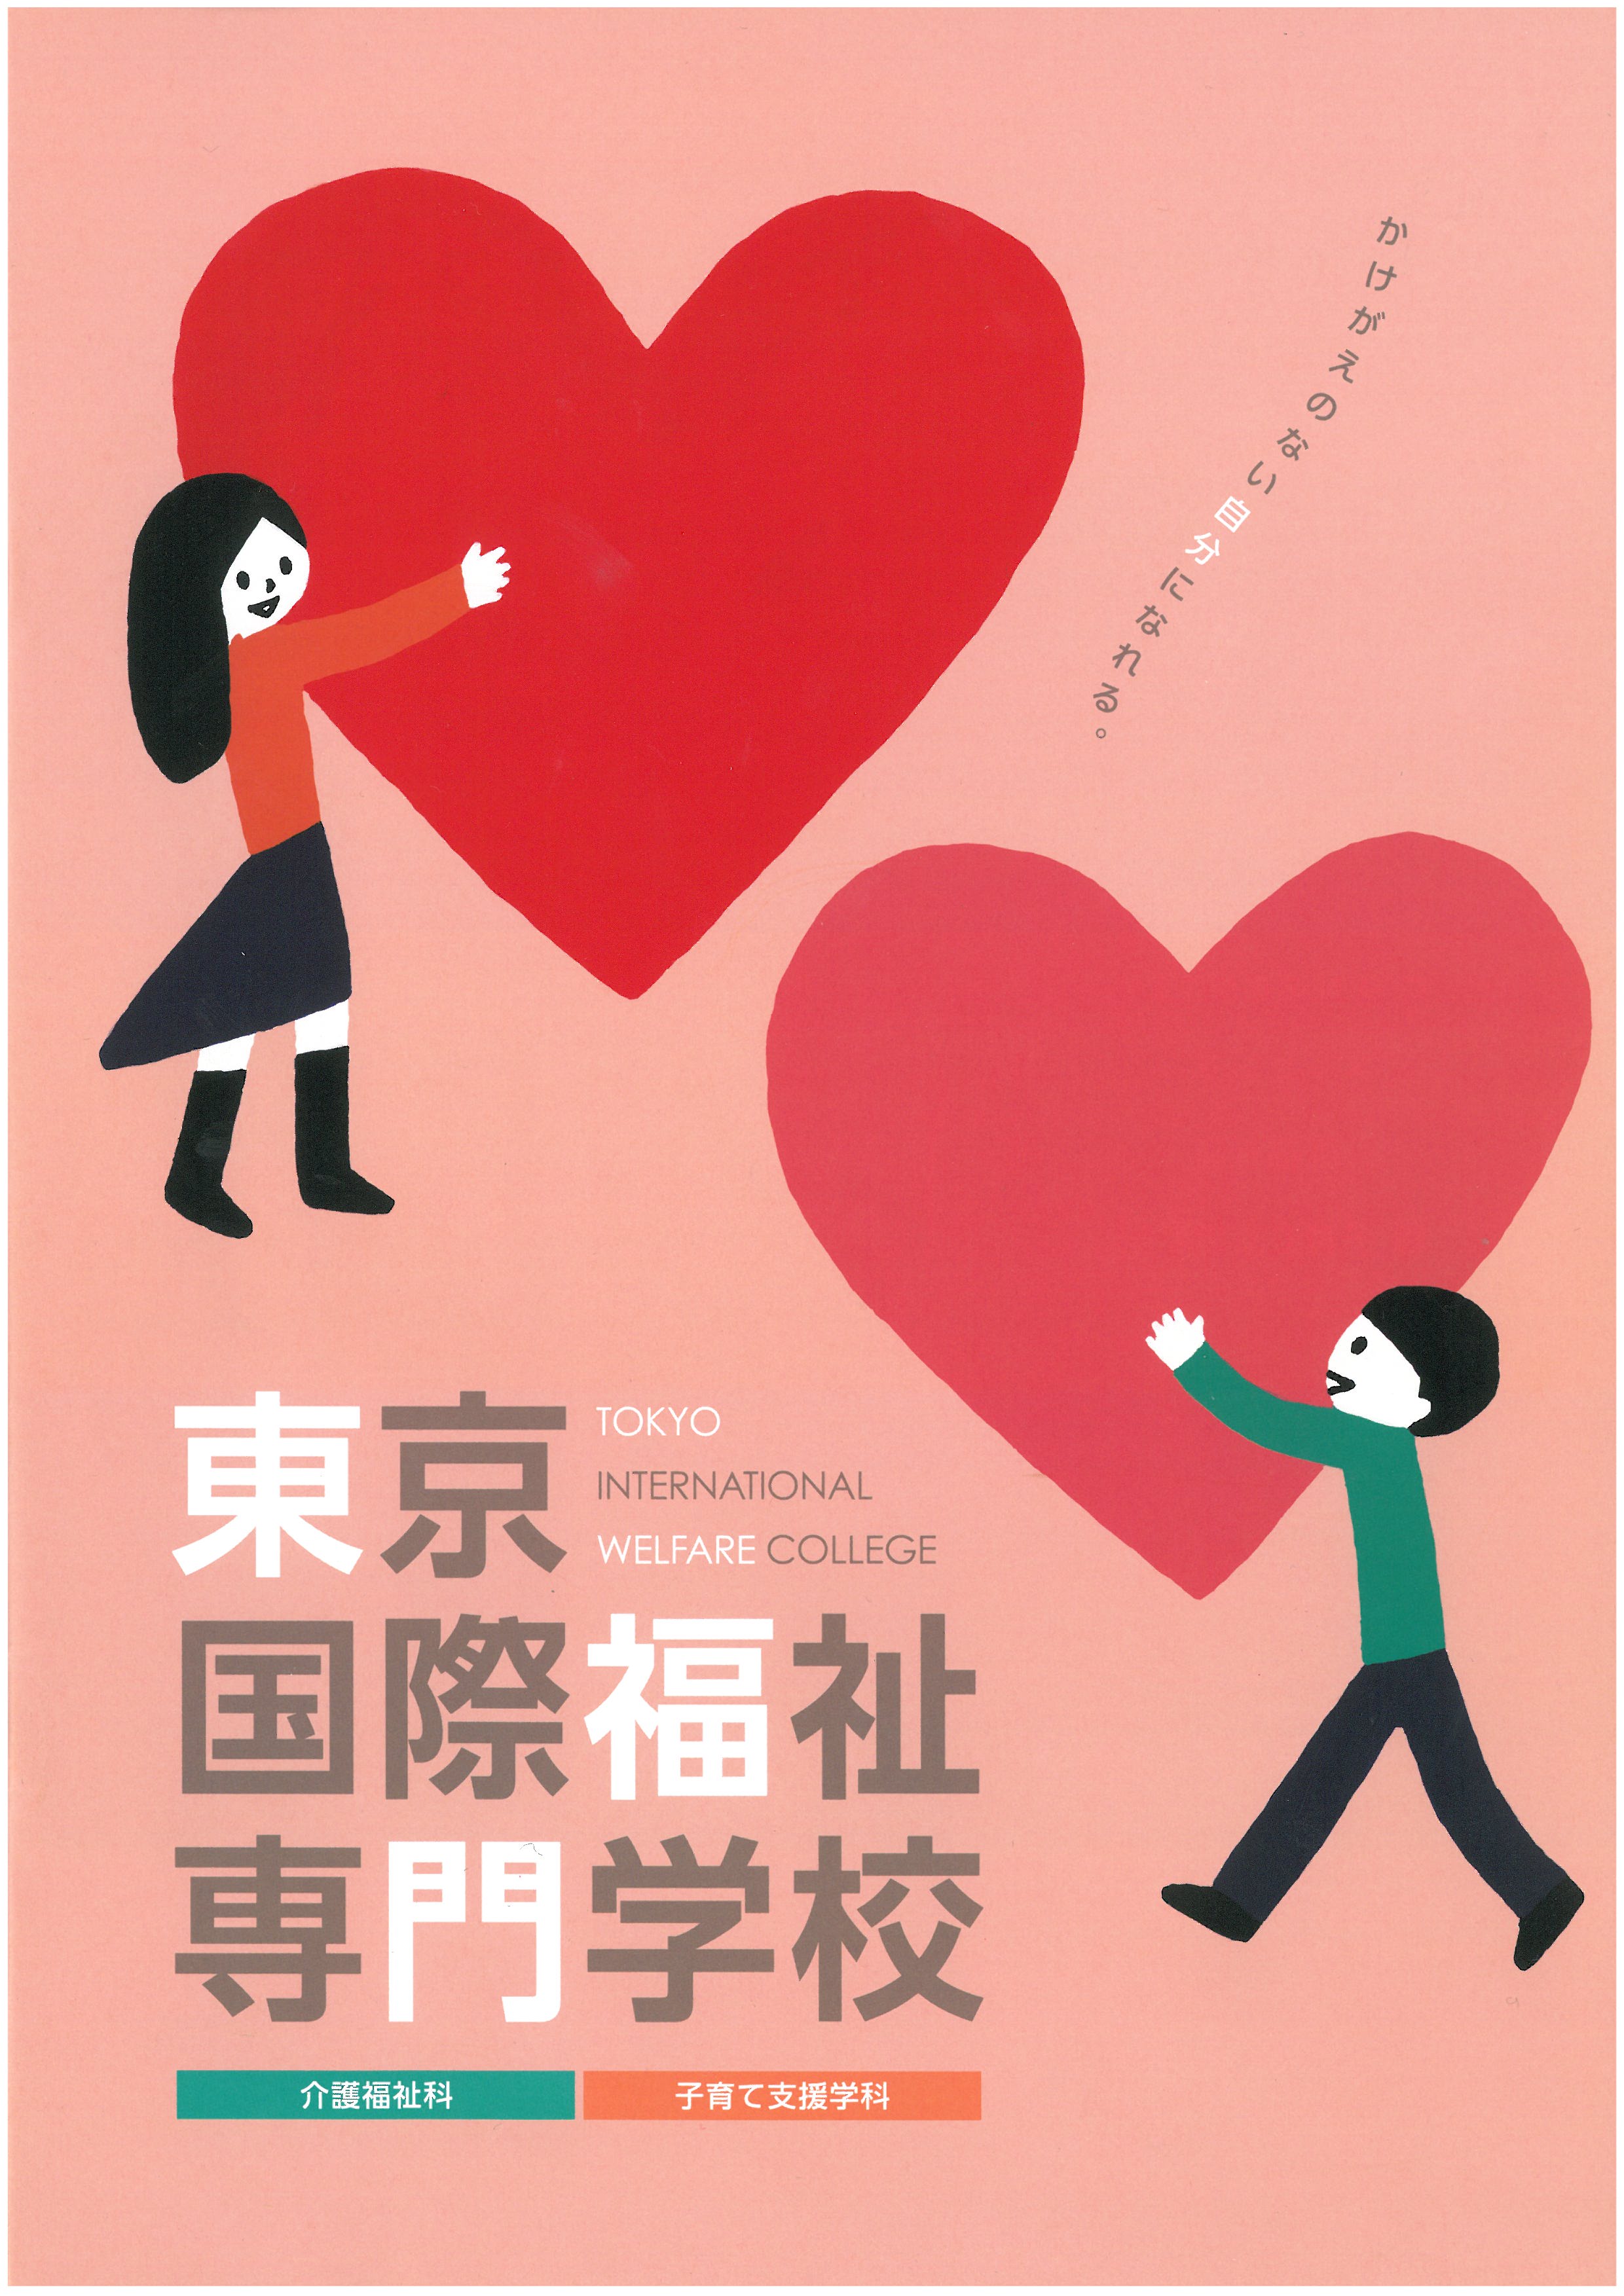 도쿄 국제복지전문학교 홍보 팜플렛 01.jpg